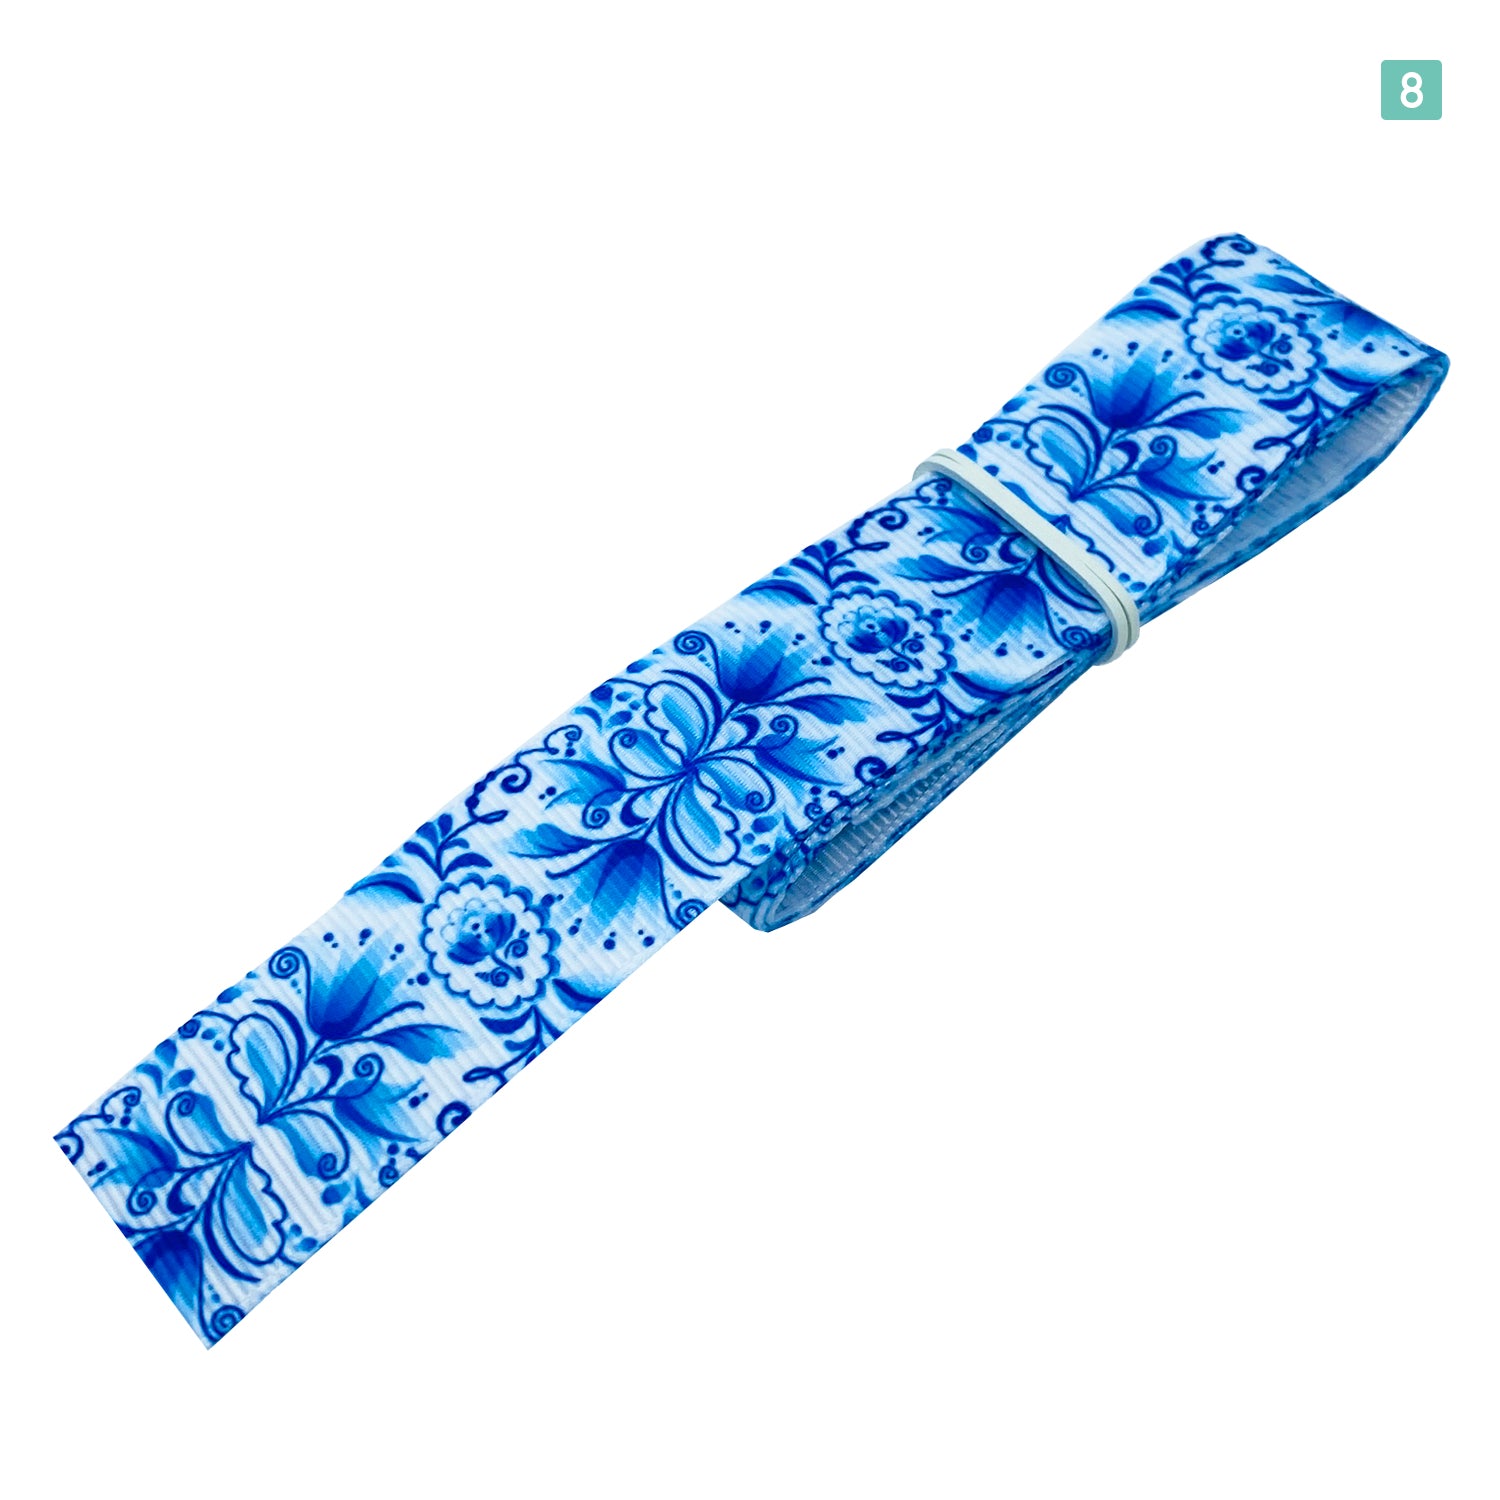 プリントリボンフラワー ブルー 25mm×1m 8種類セットA 北欧 花柄 フラワー ハンドメイド 手芸用 パーツ 布雑貨 ラッピング 包装 –  わんだーしょっぷ